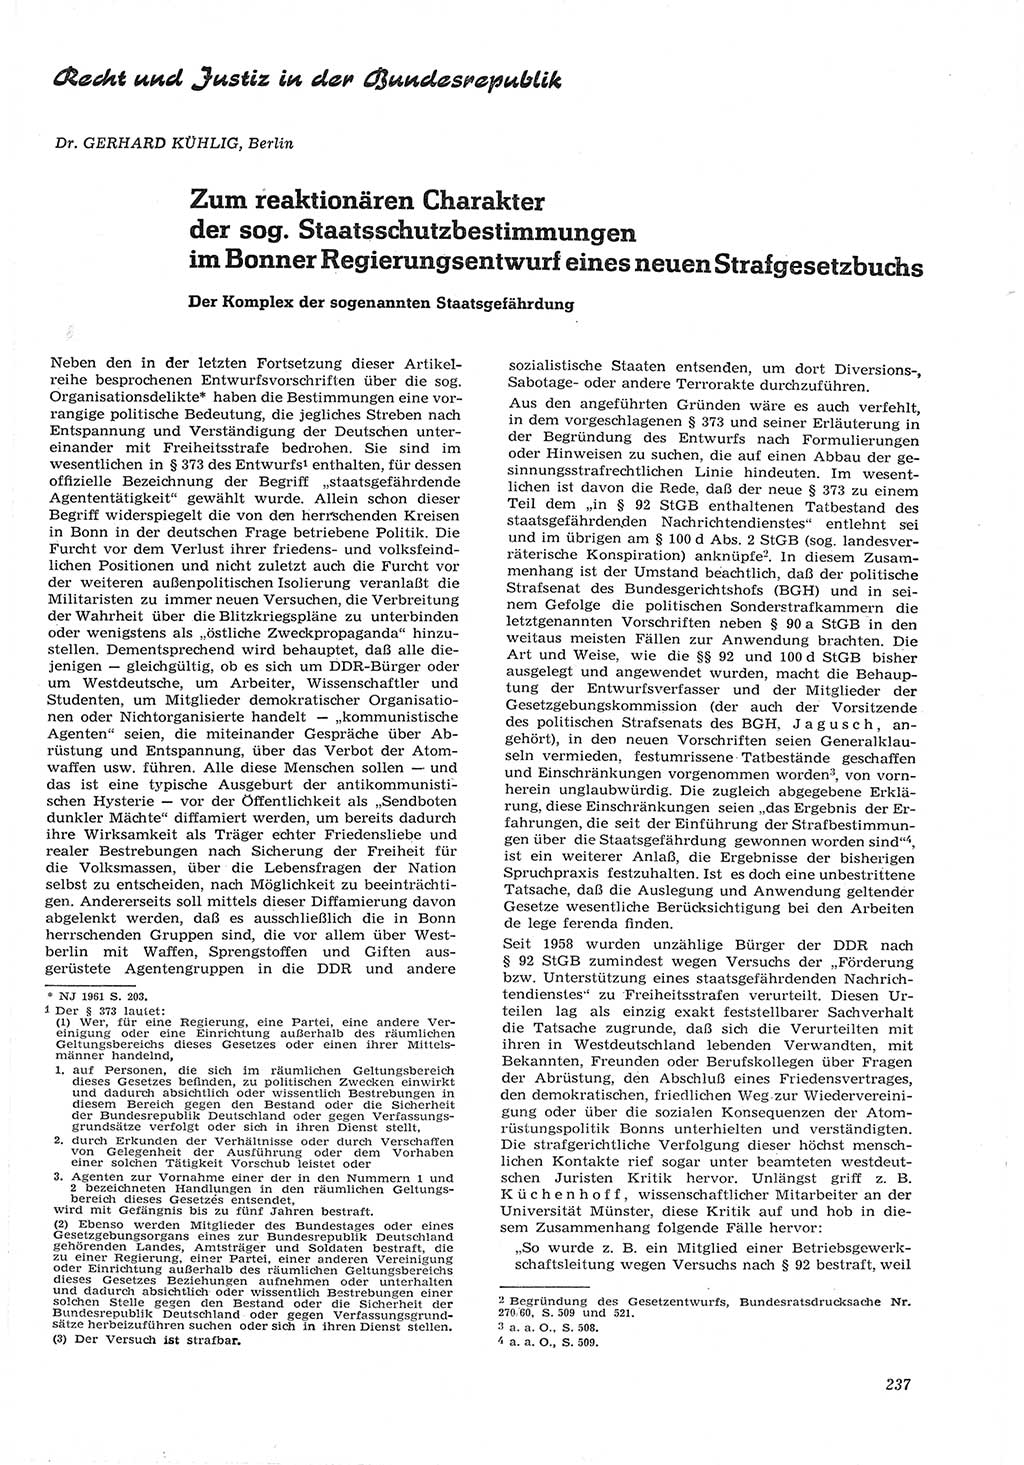 Neue Justiz (NJ), Zeitschrift für Recht und Rechtswissenschaft [Deutsche Demokratische Republik (DDR)], 15. Jahrgang 1961, Seite 237 (NJ DDR 1961, S. 237)